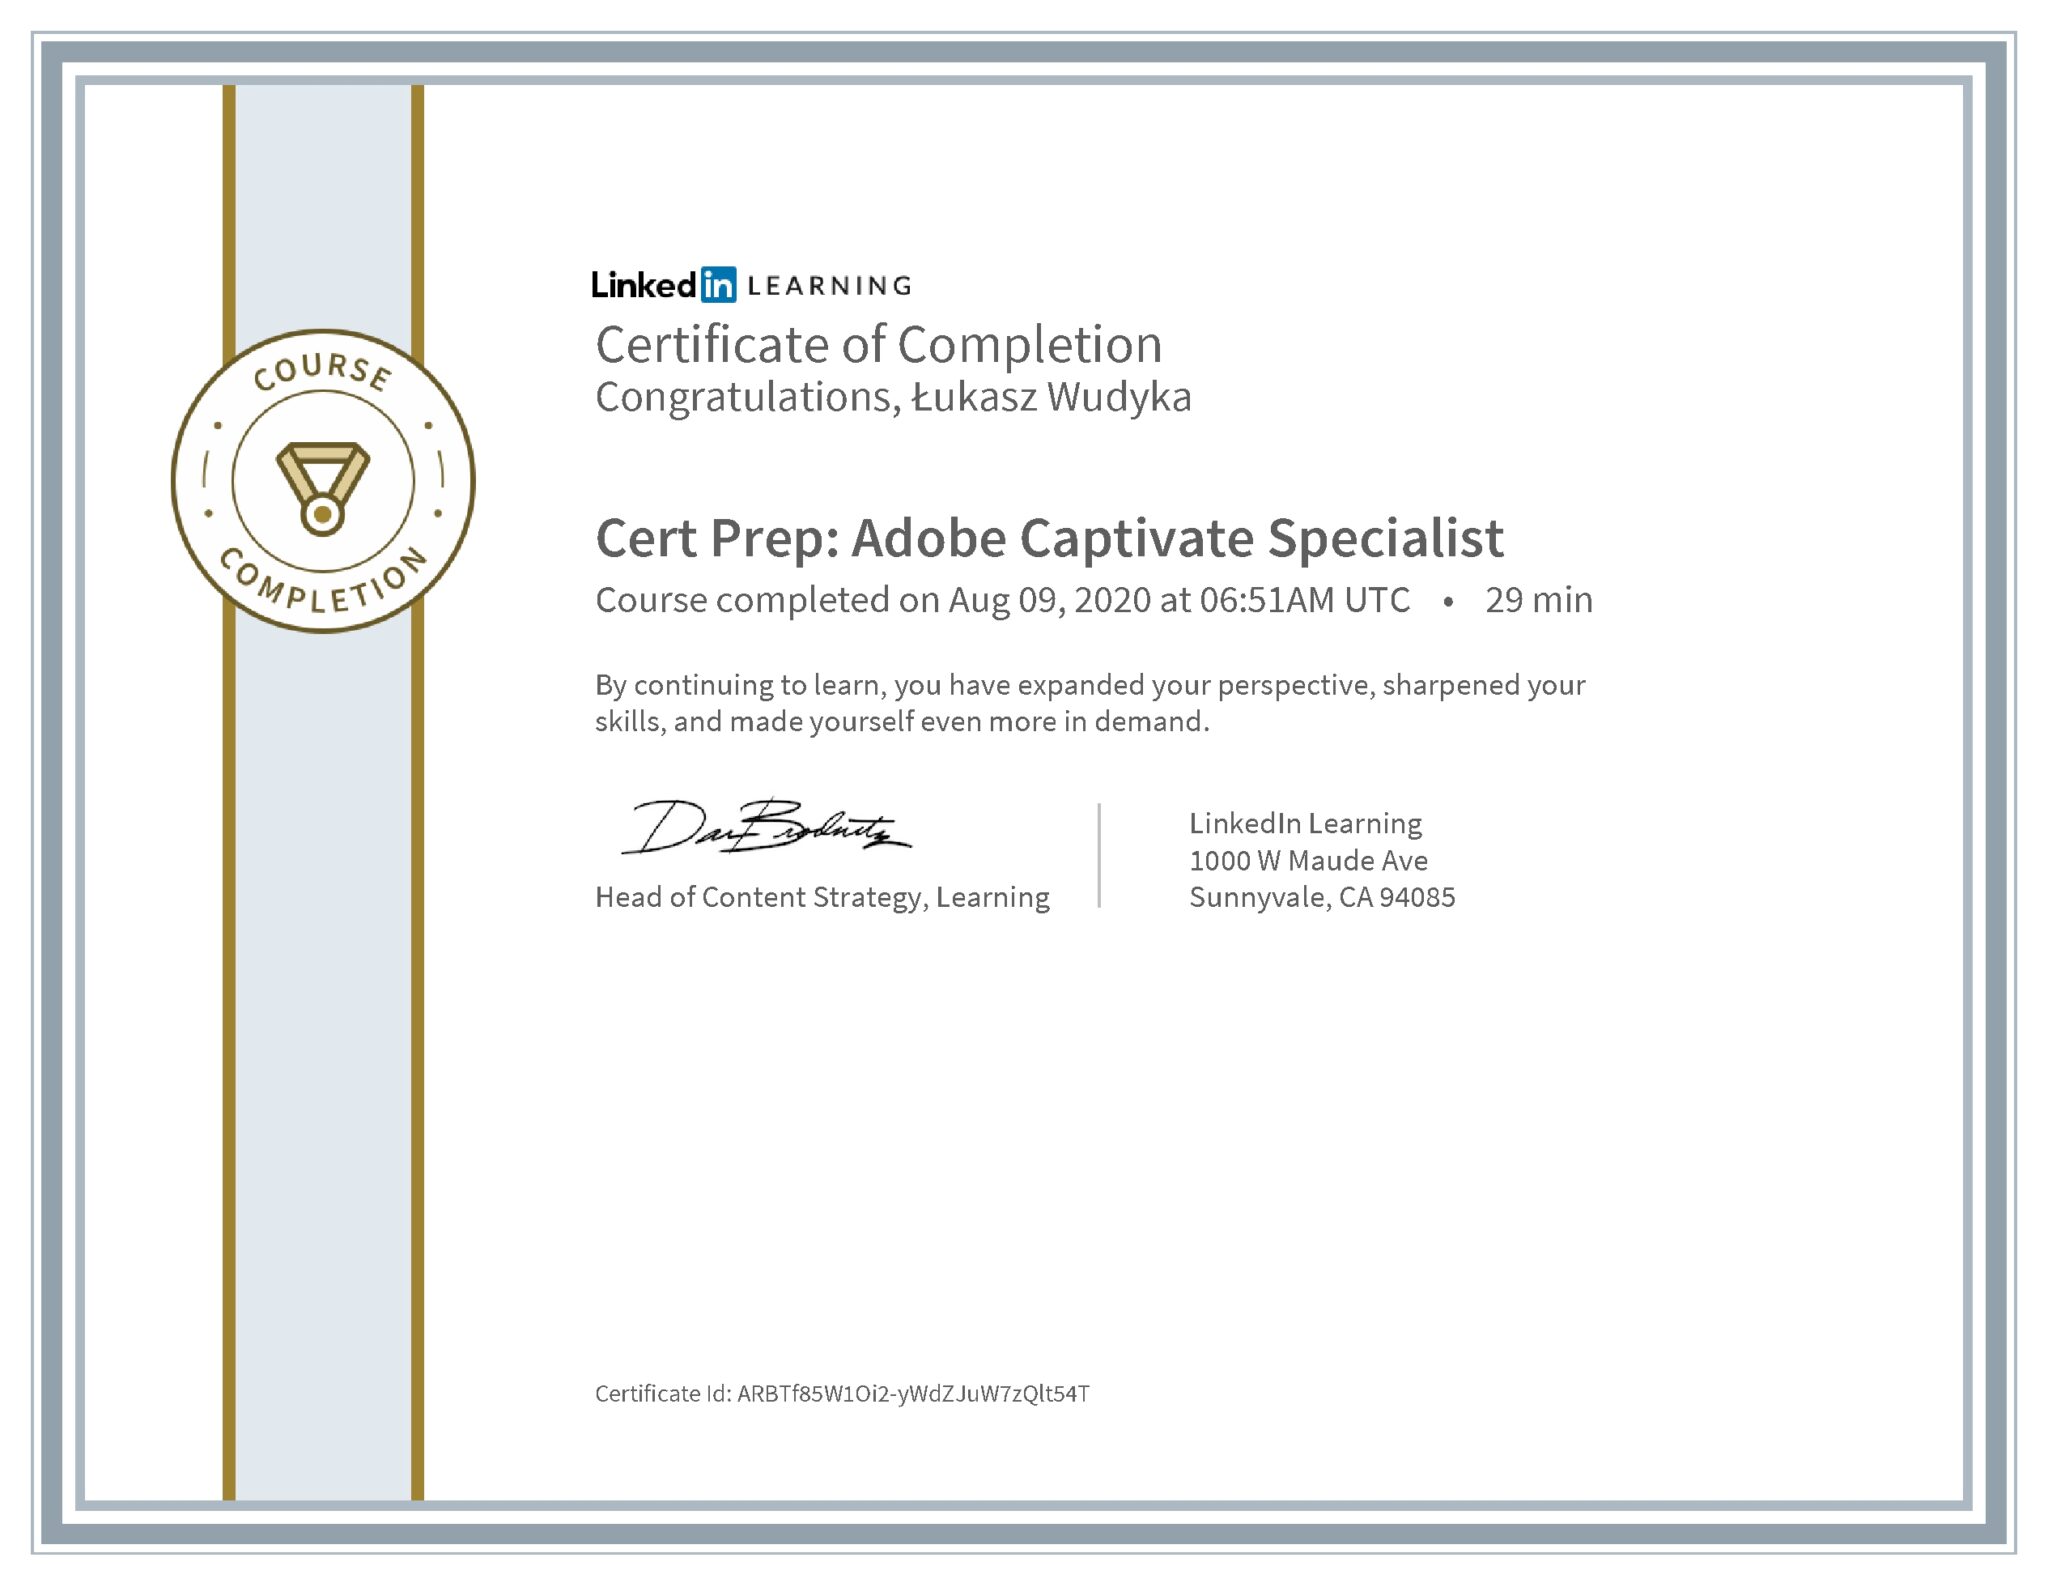 Łukasz Wudyka certyfikat LinkedIn Cert Prep: Adobe Captivate Specialist